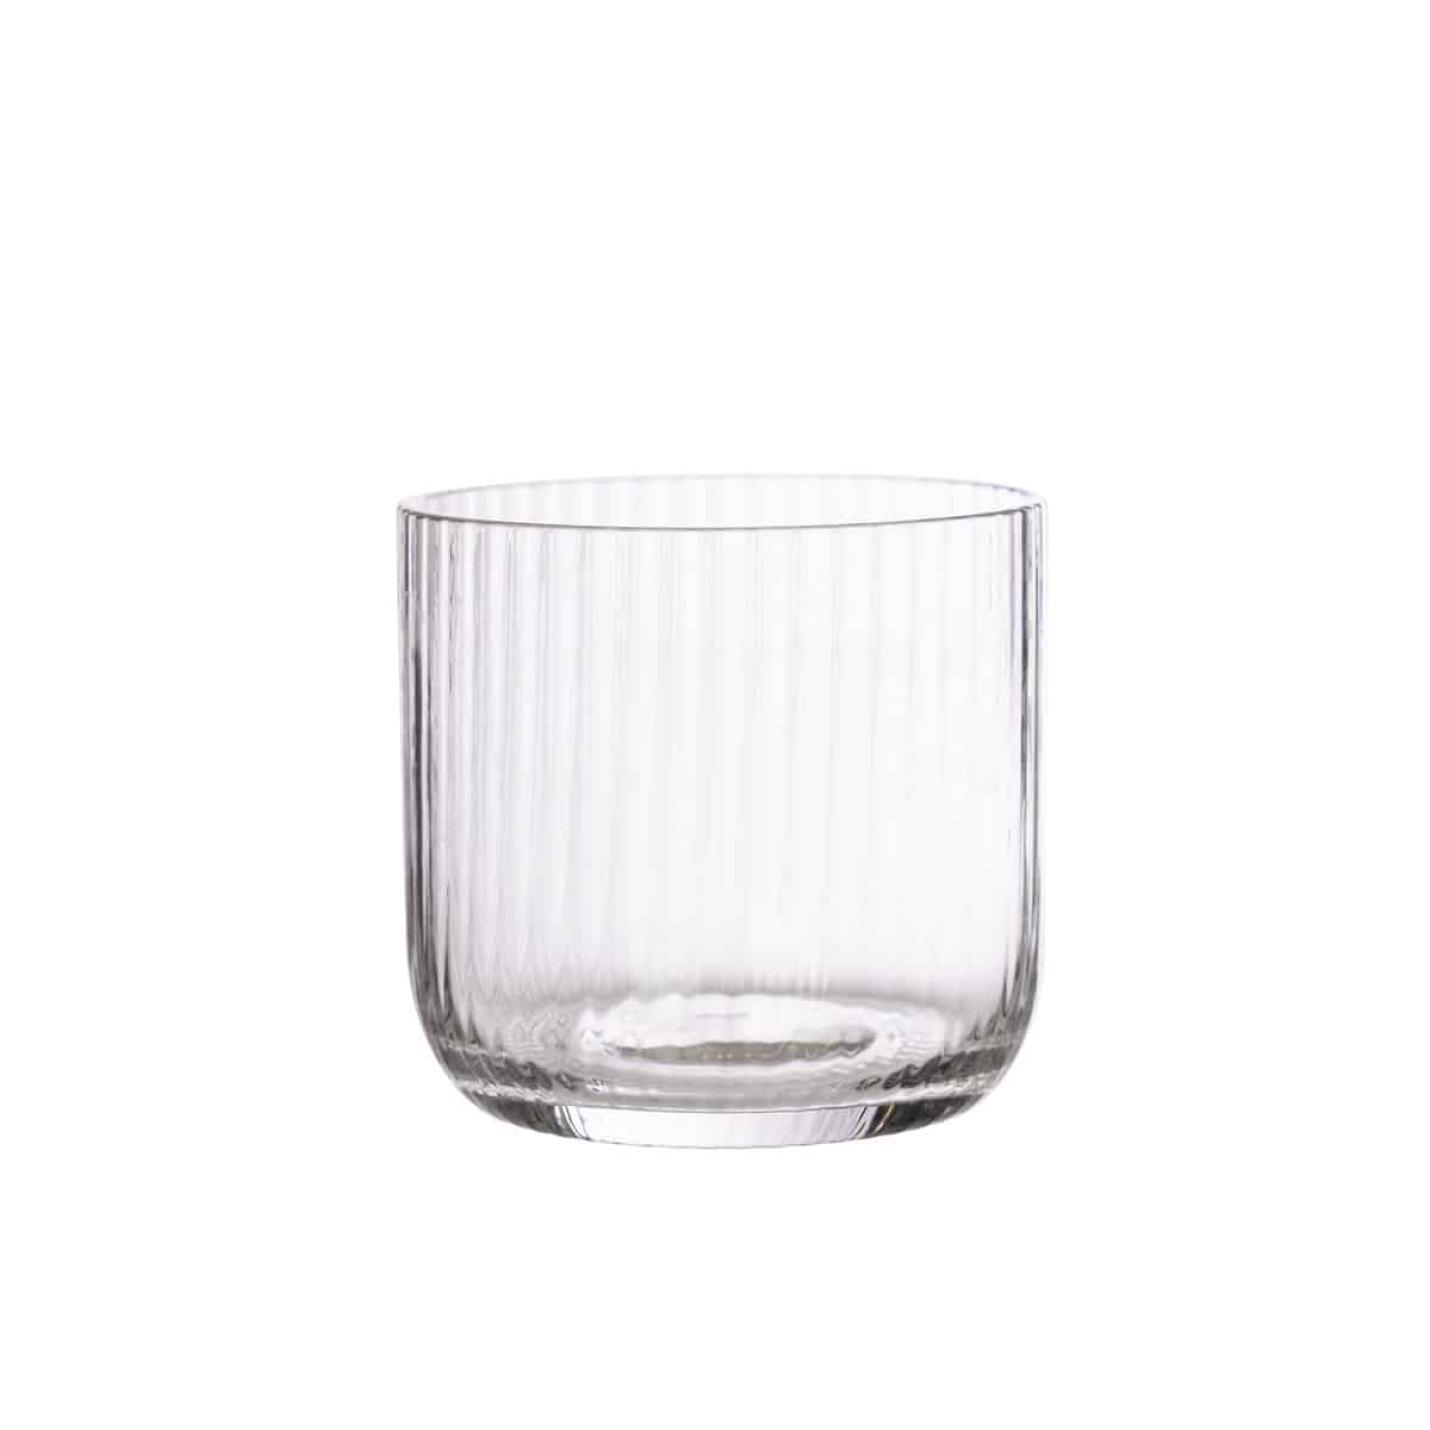 ERNST glas ribbel - set van 2